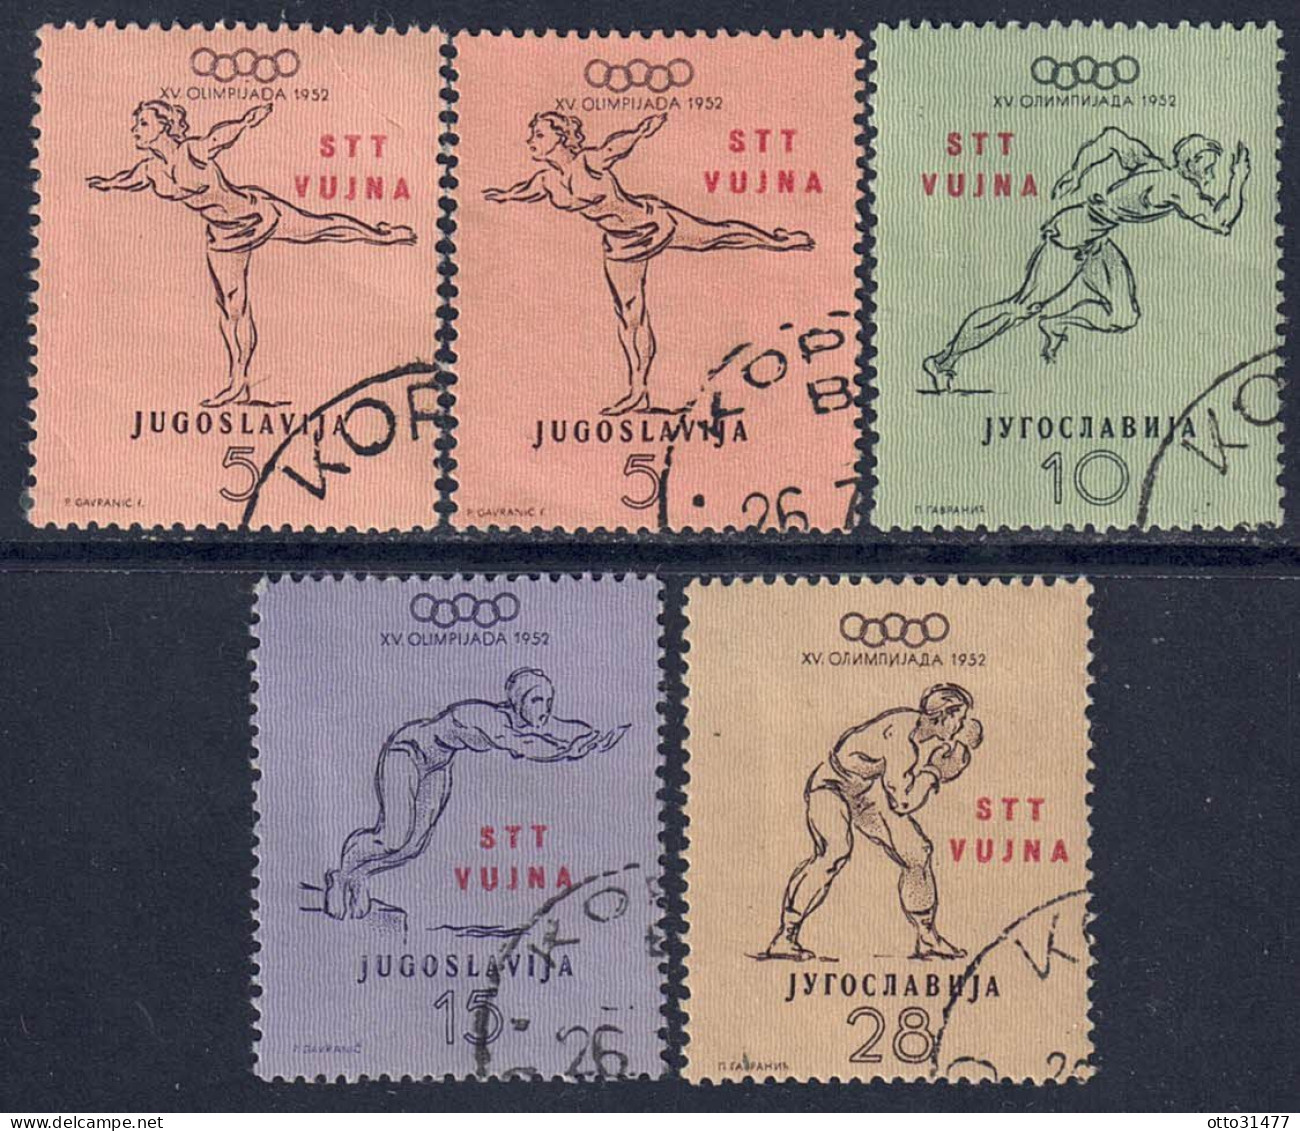 Italien / Triest Zone B - 1952 - Olymp. Spiele, Nr. 70 - 73, Gestempelt / Used - Used